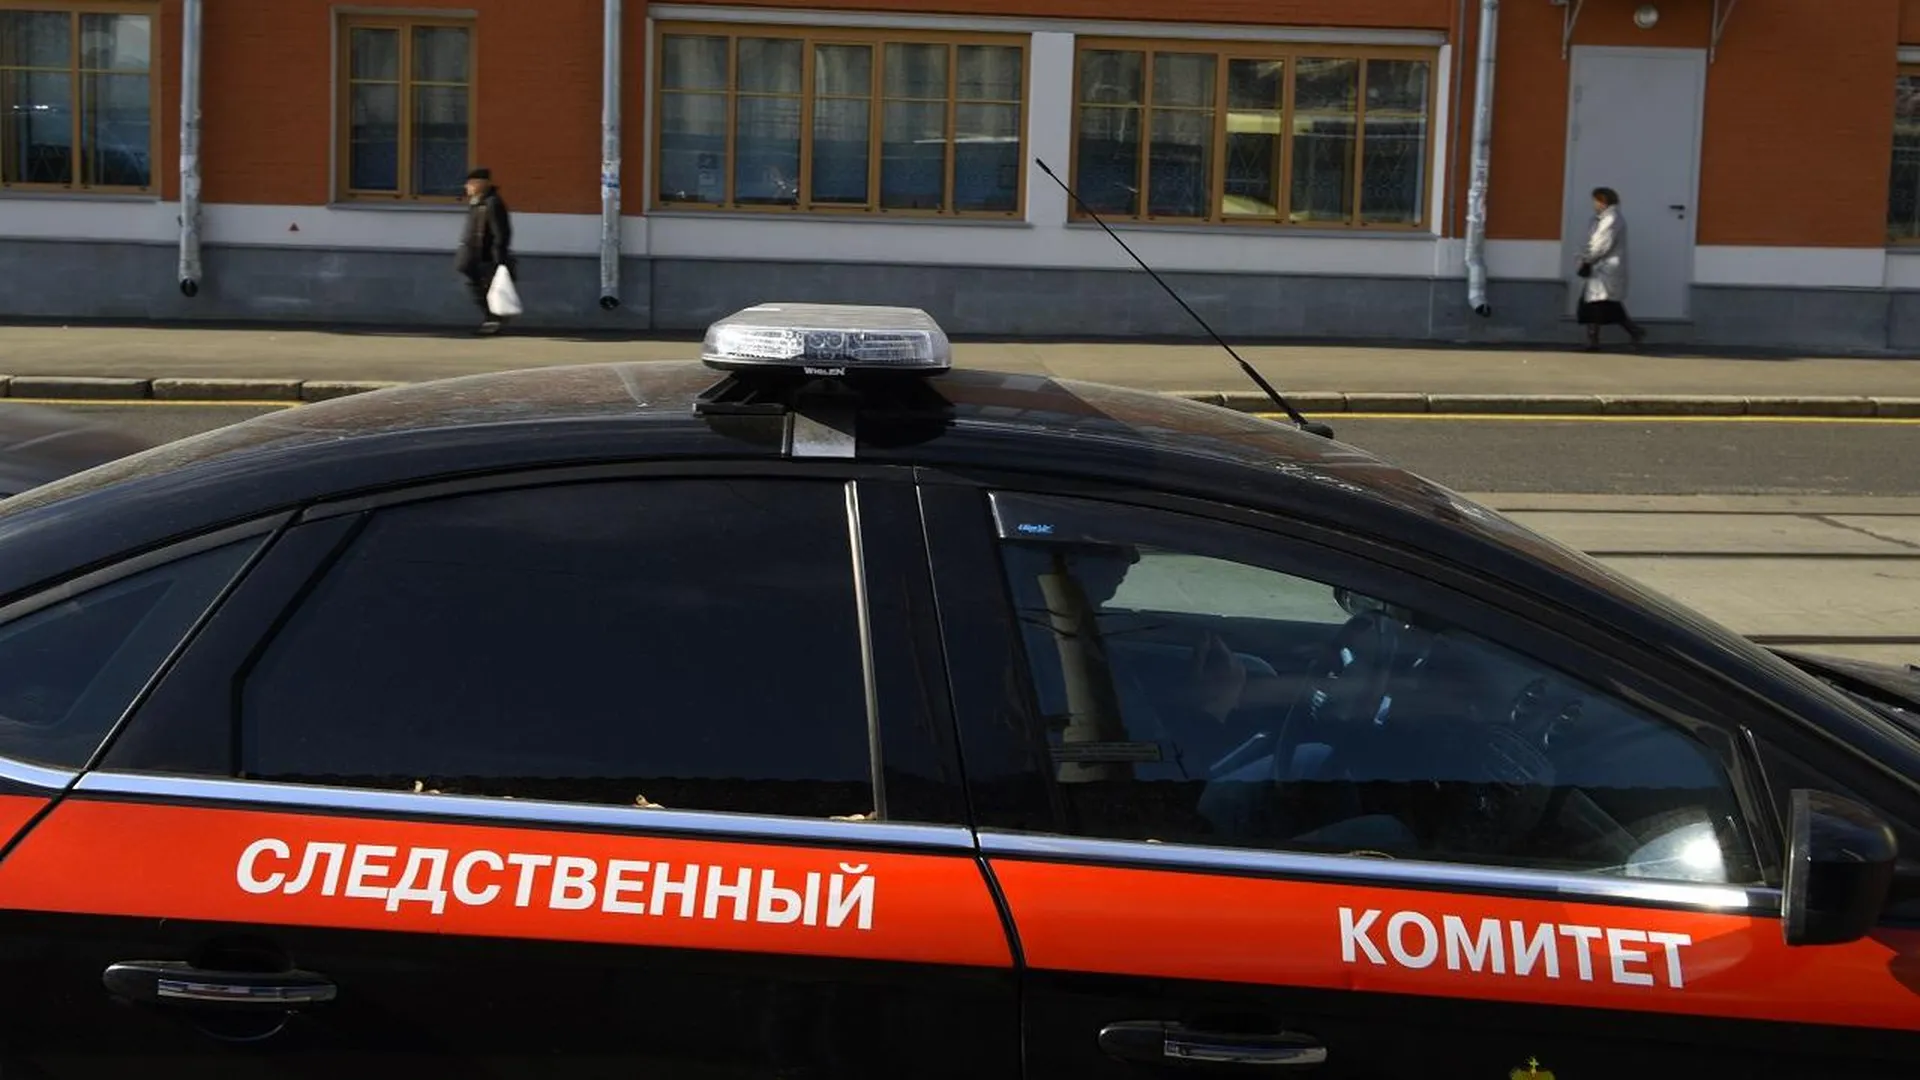 Следователи приступили к работе с фигурантом дела об убийстве трех пенсионерок в Подмосковье